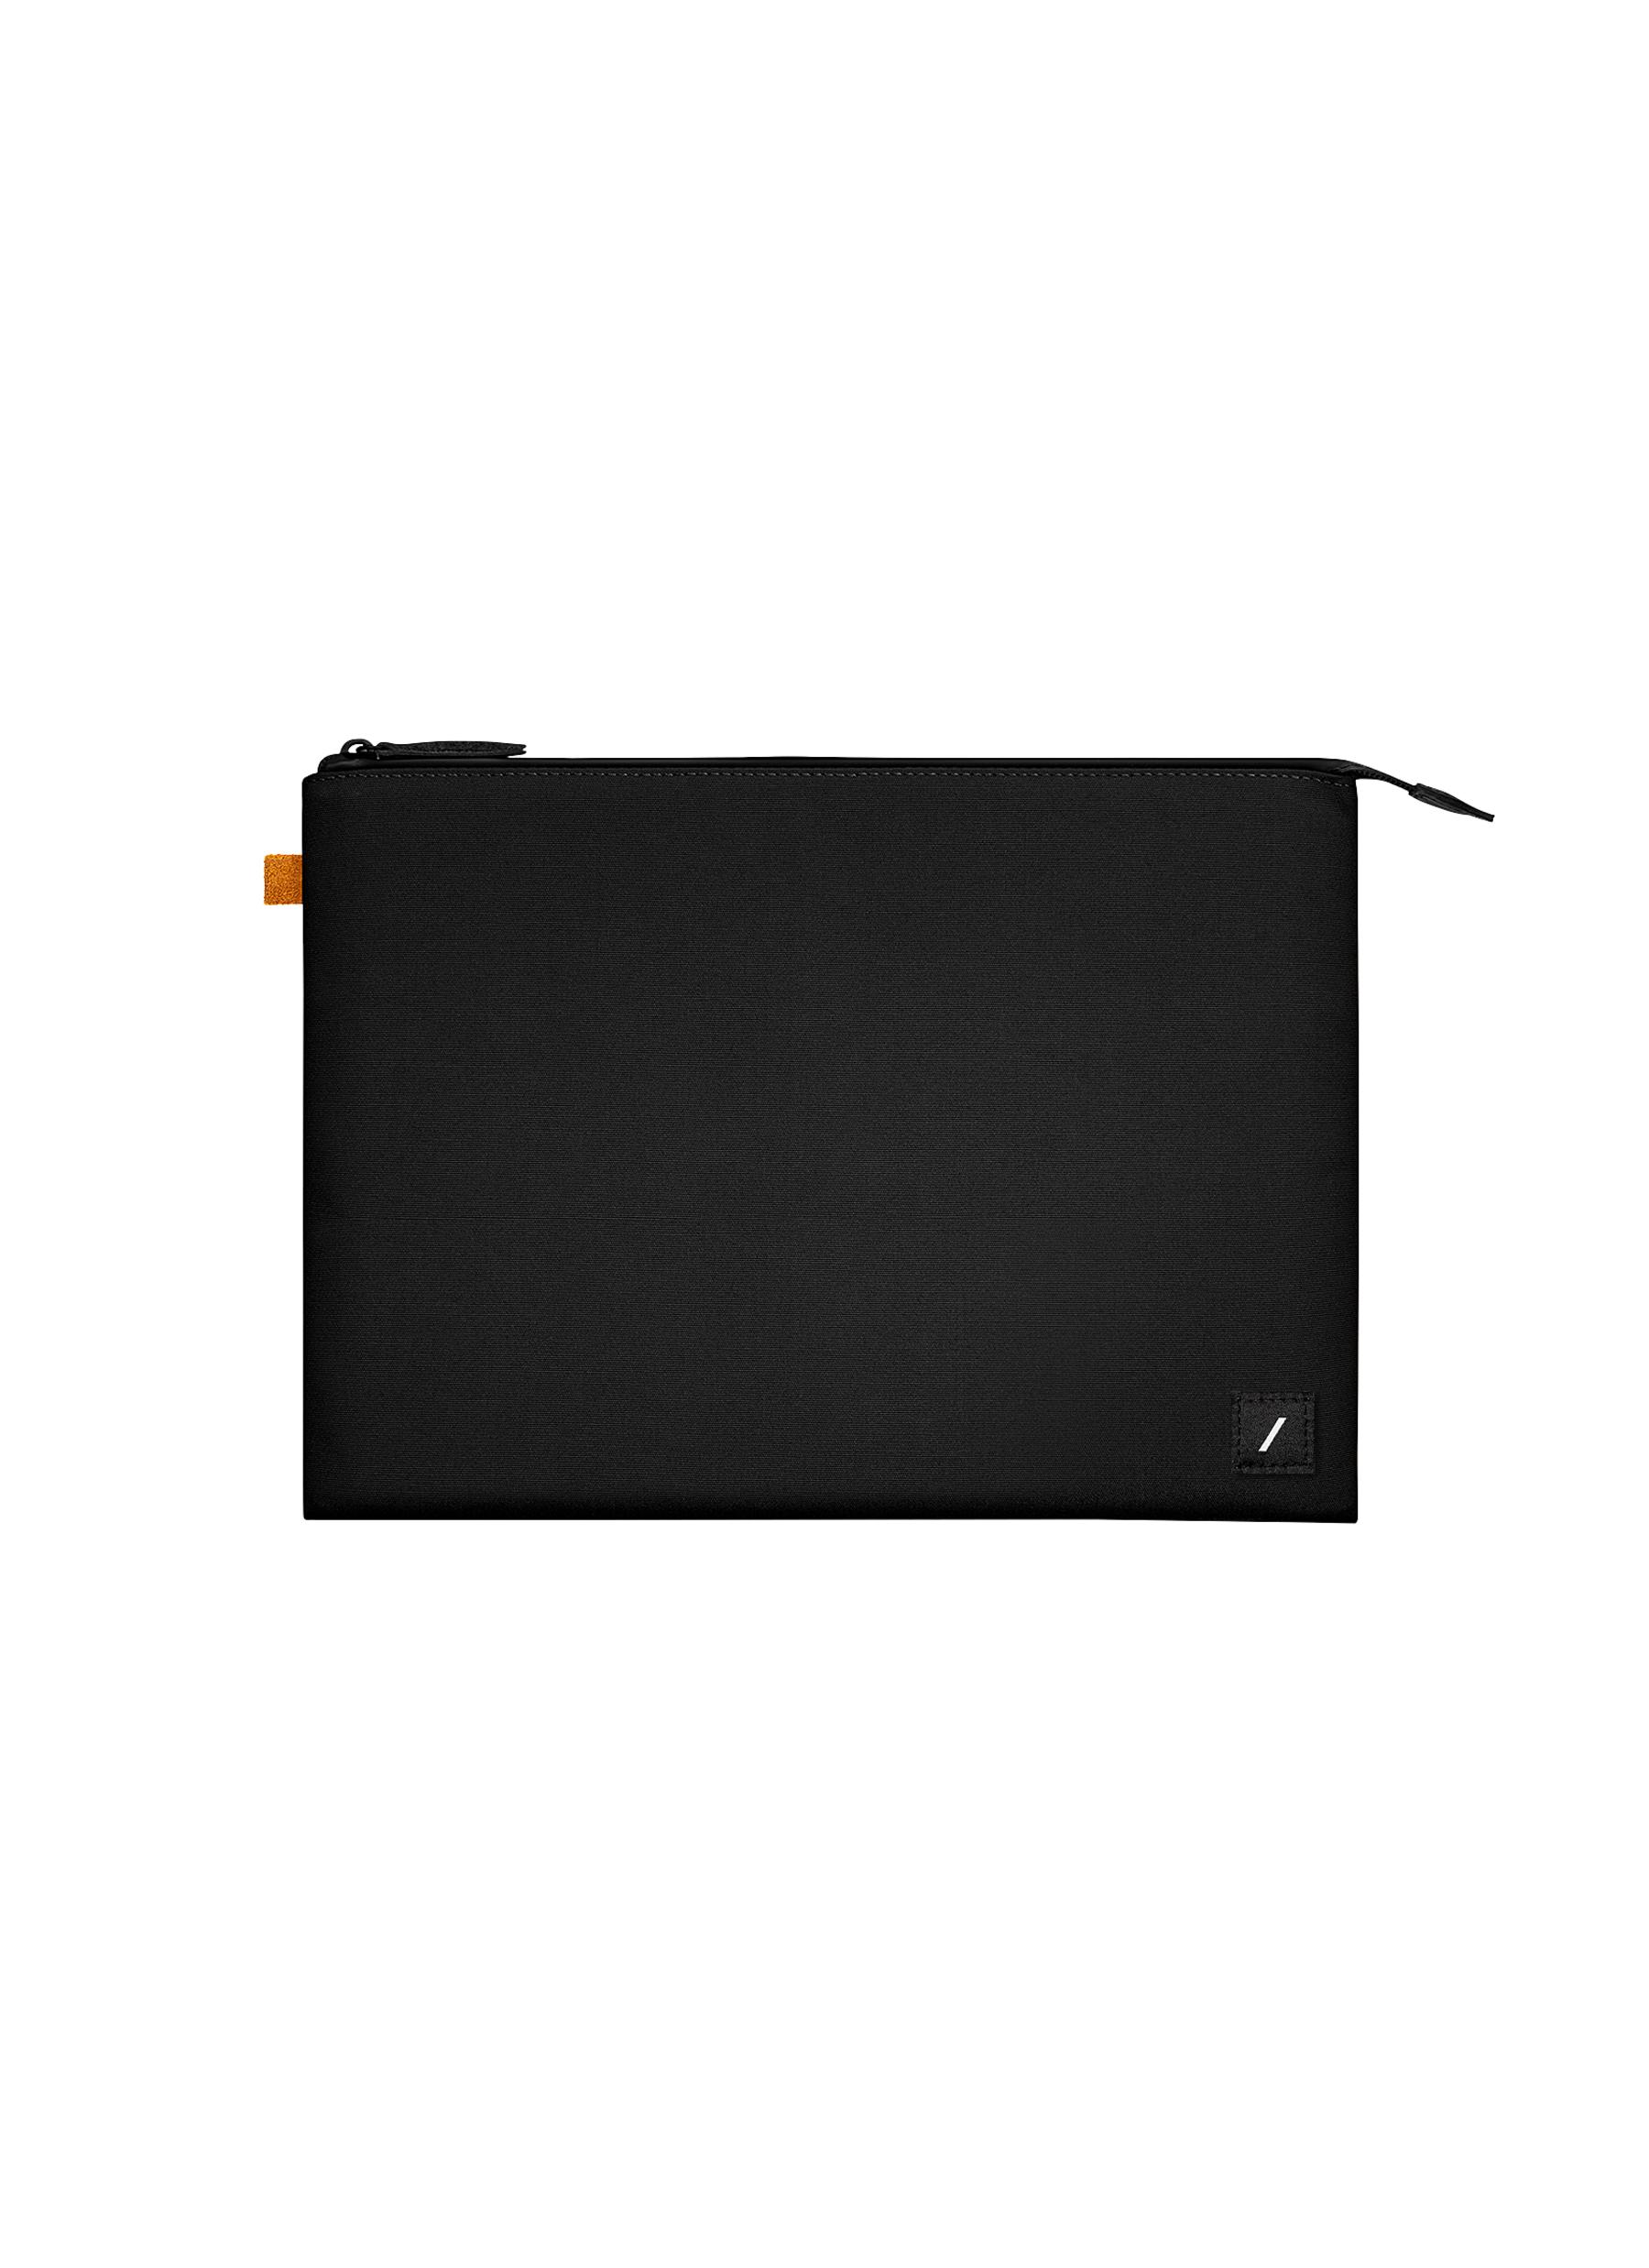 Stow Lite 13" Macbook Sleeve - Black